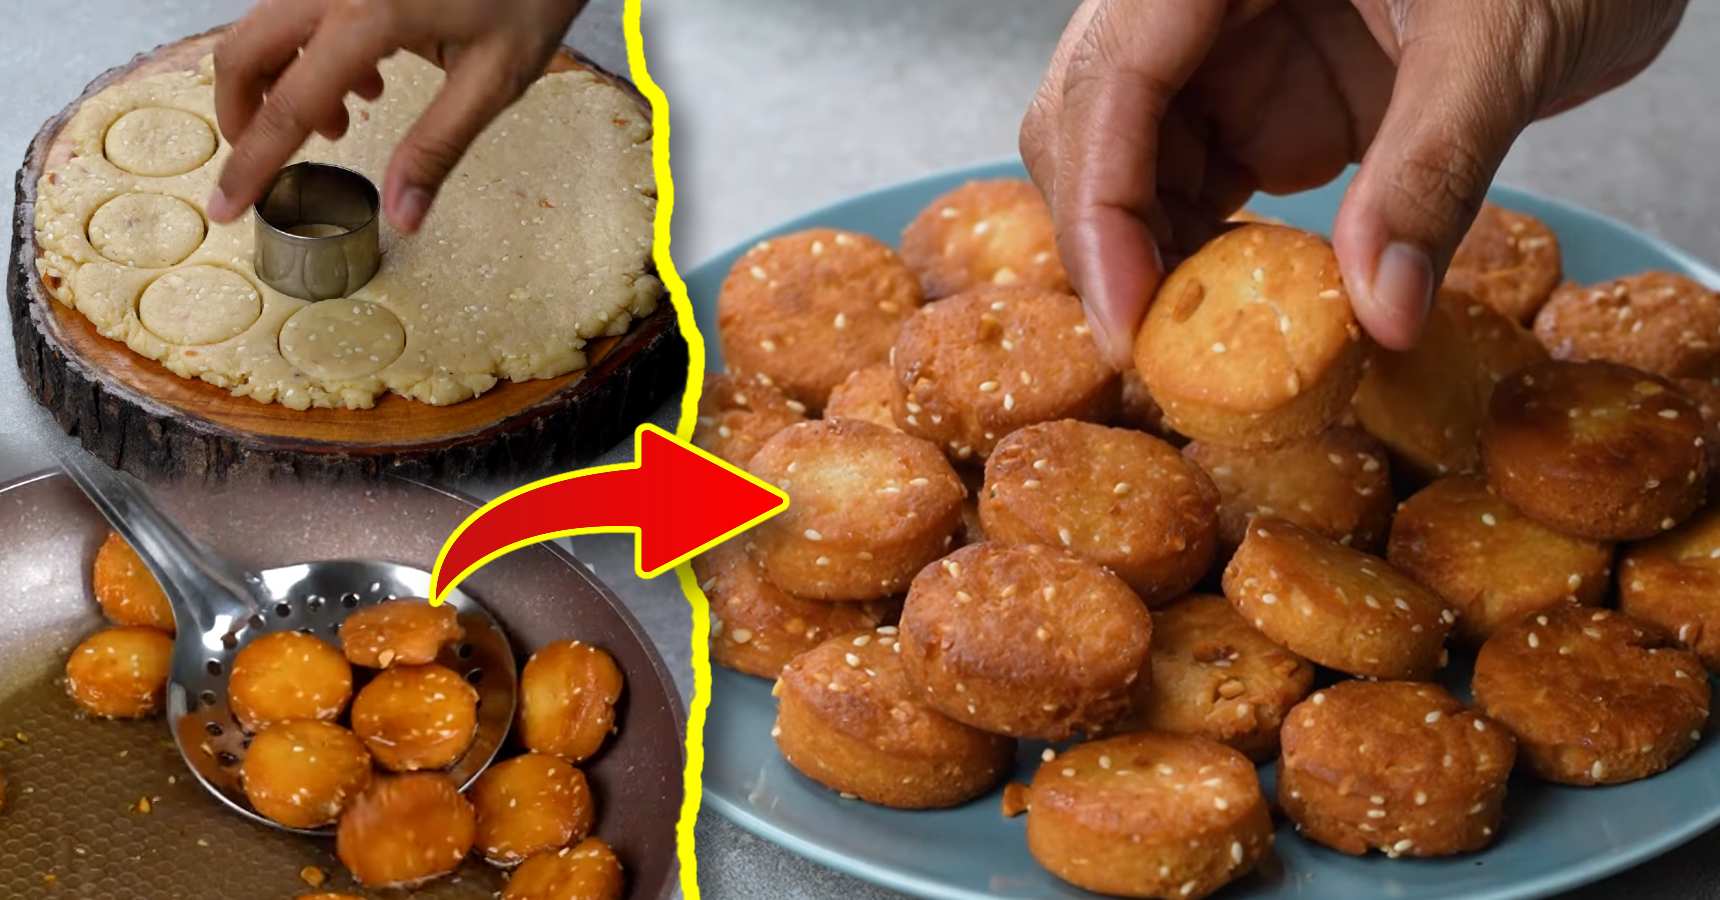 How to Cook Home Made Dudh Malai Cookies Recipe